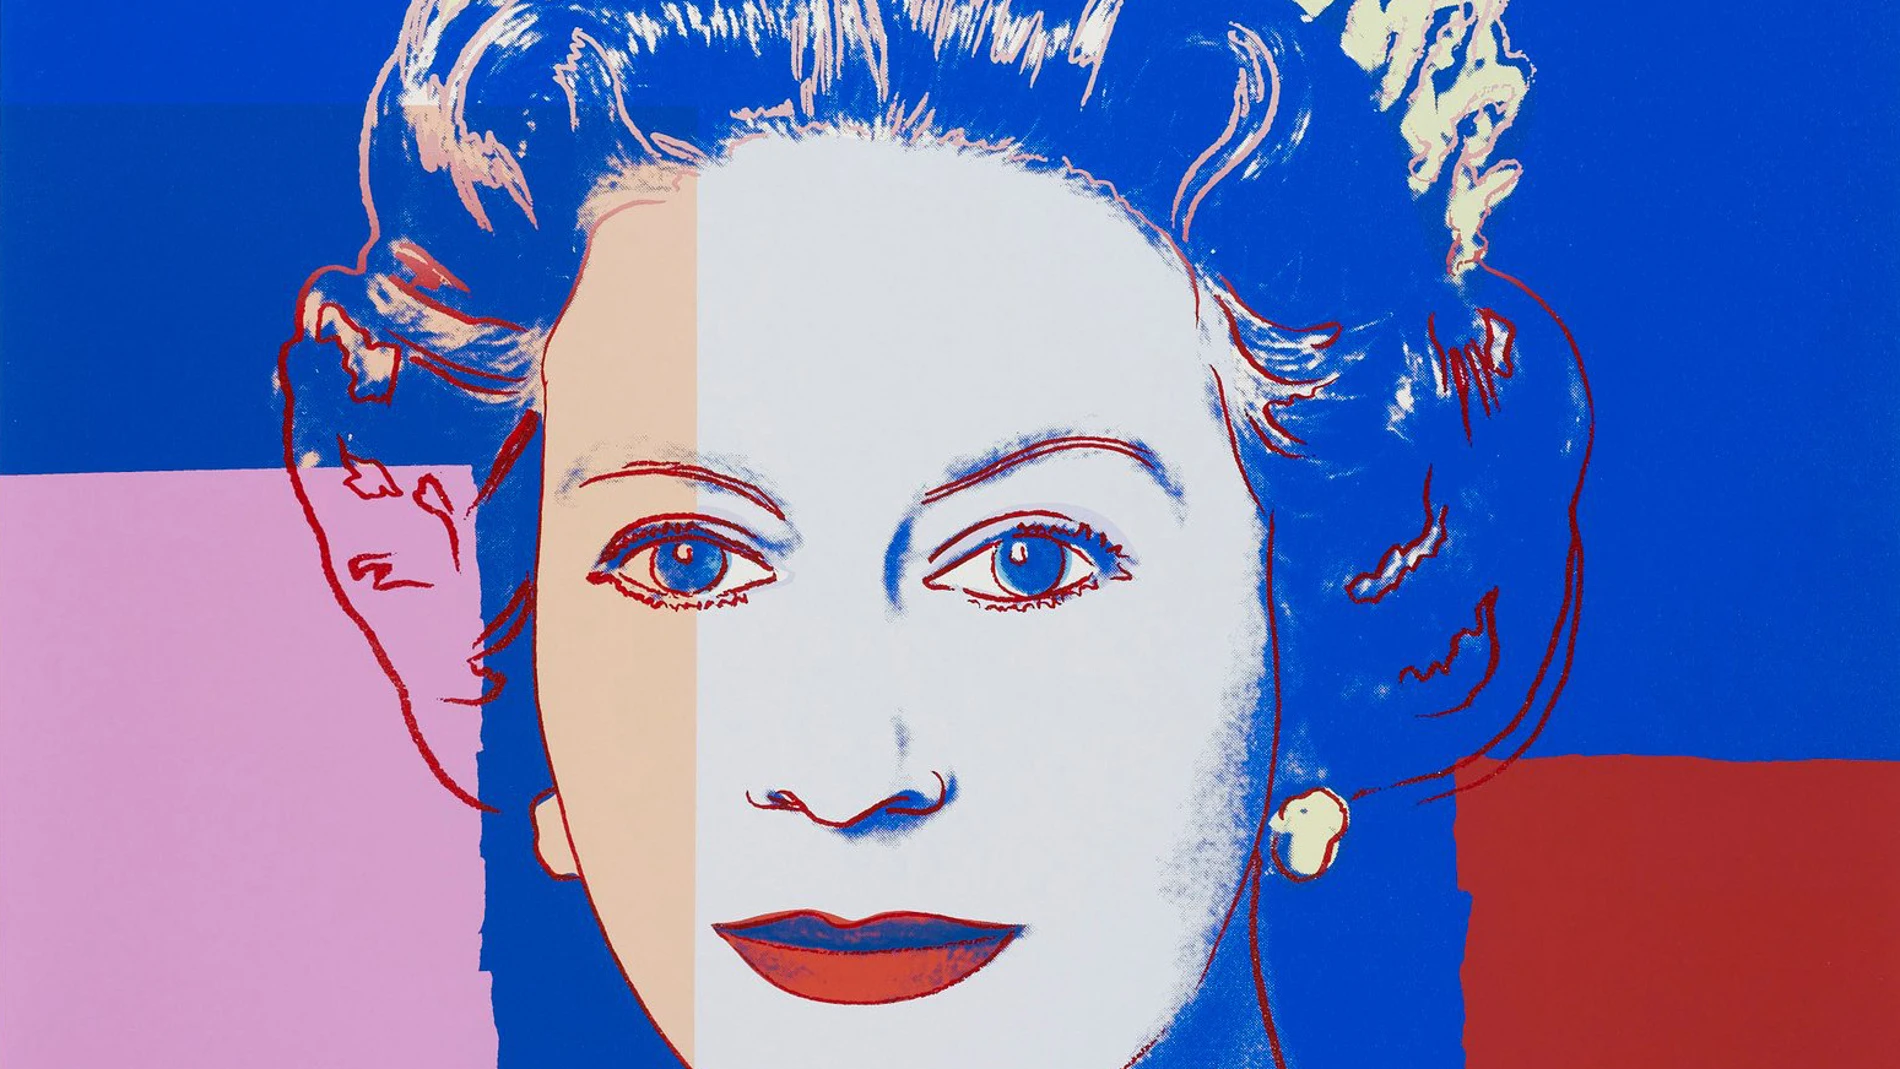 Imagen de "Queen Elizabeth II 335", de Andy Warhol, parte de la serie "Reigning Queens" producida por Warhol en 1985.